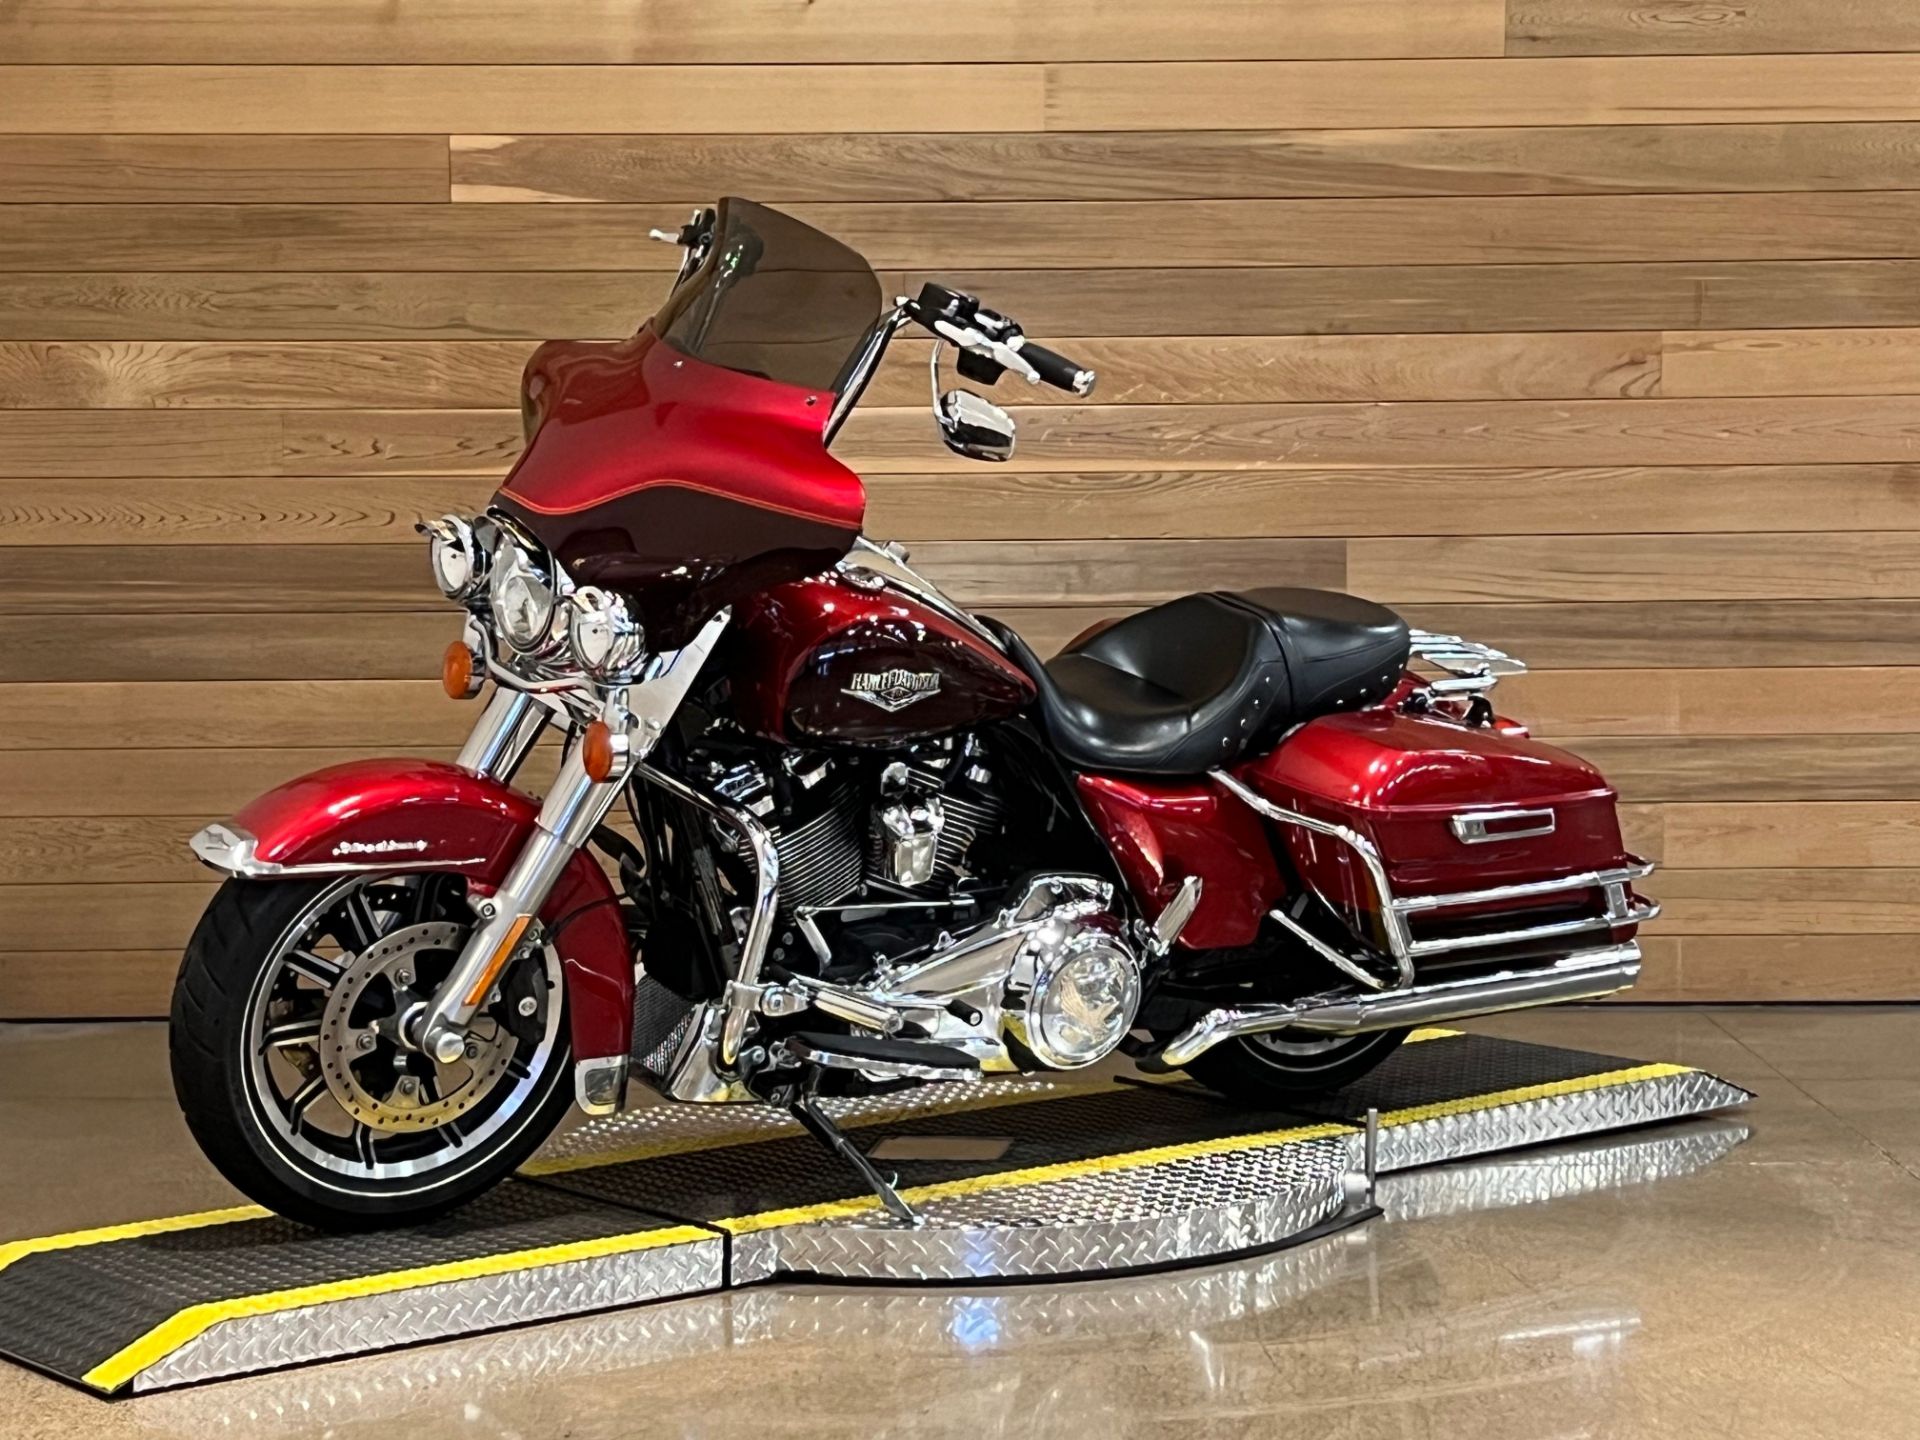 2019 Harley-Davidson Road King® in Salem, Oregon - Photo 4